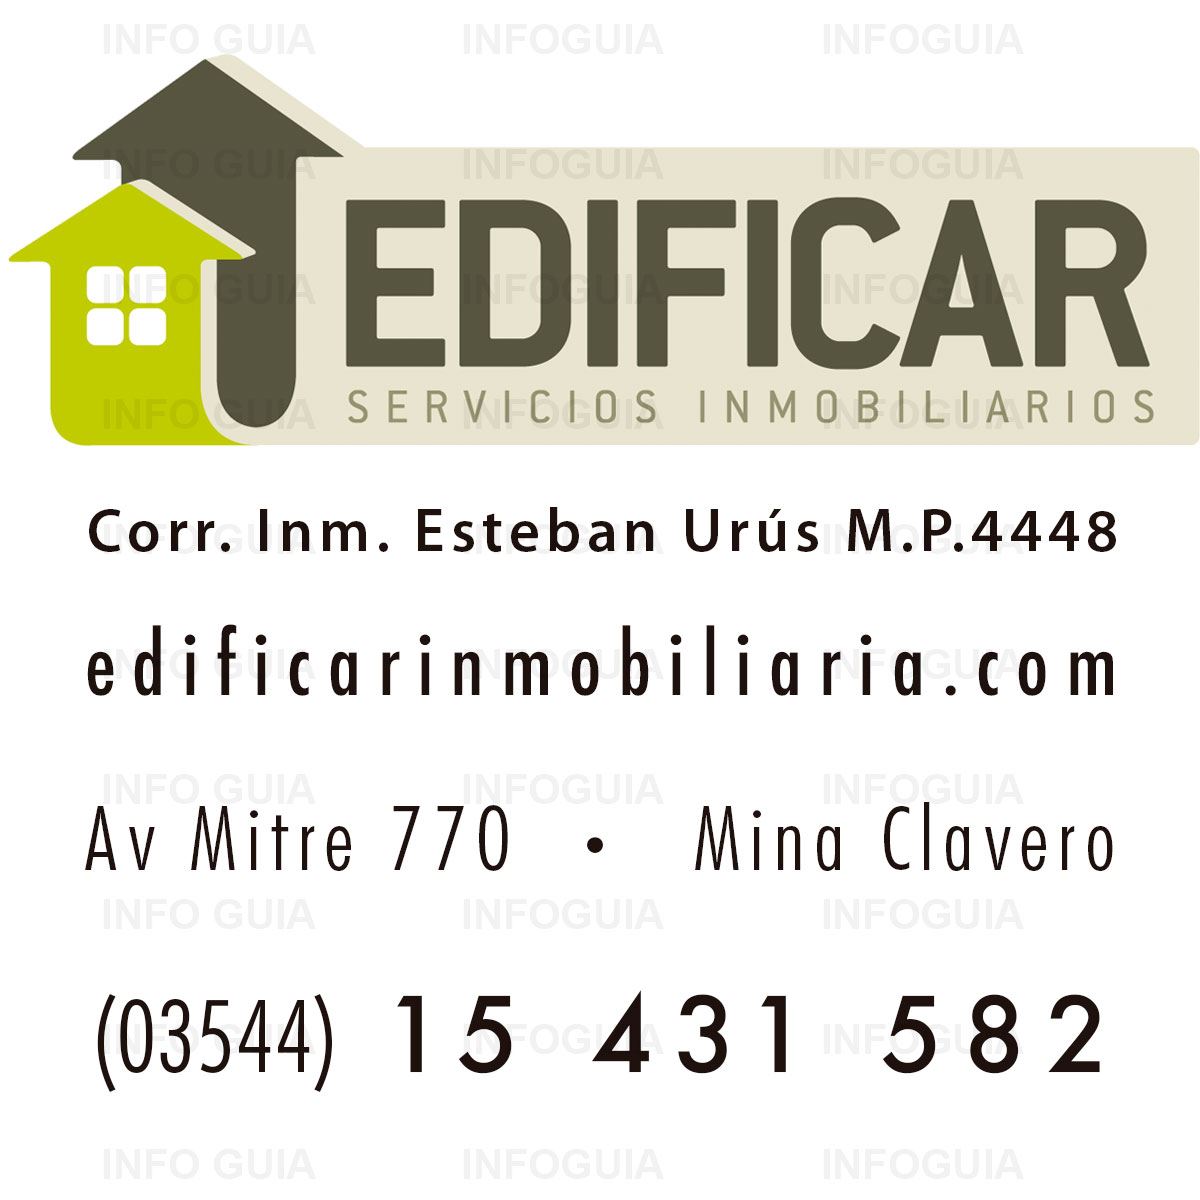 Inmobiliaria Edificar - InfoGuia Traslasierra - Servicios inmobiliarios en Mina Clavero. Corredor Inmobiliario Esteban Urús